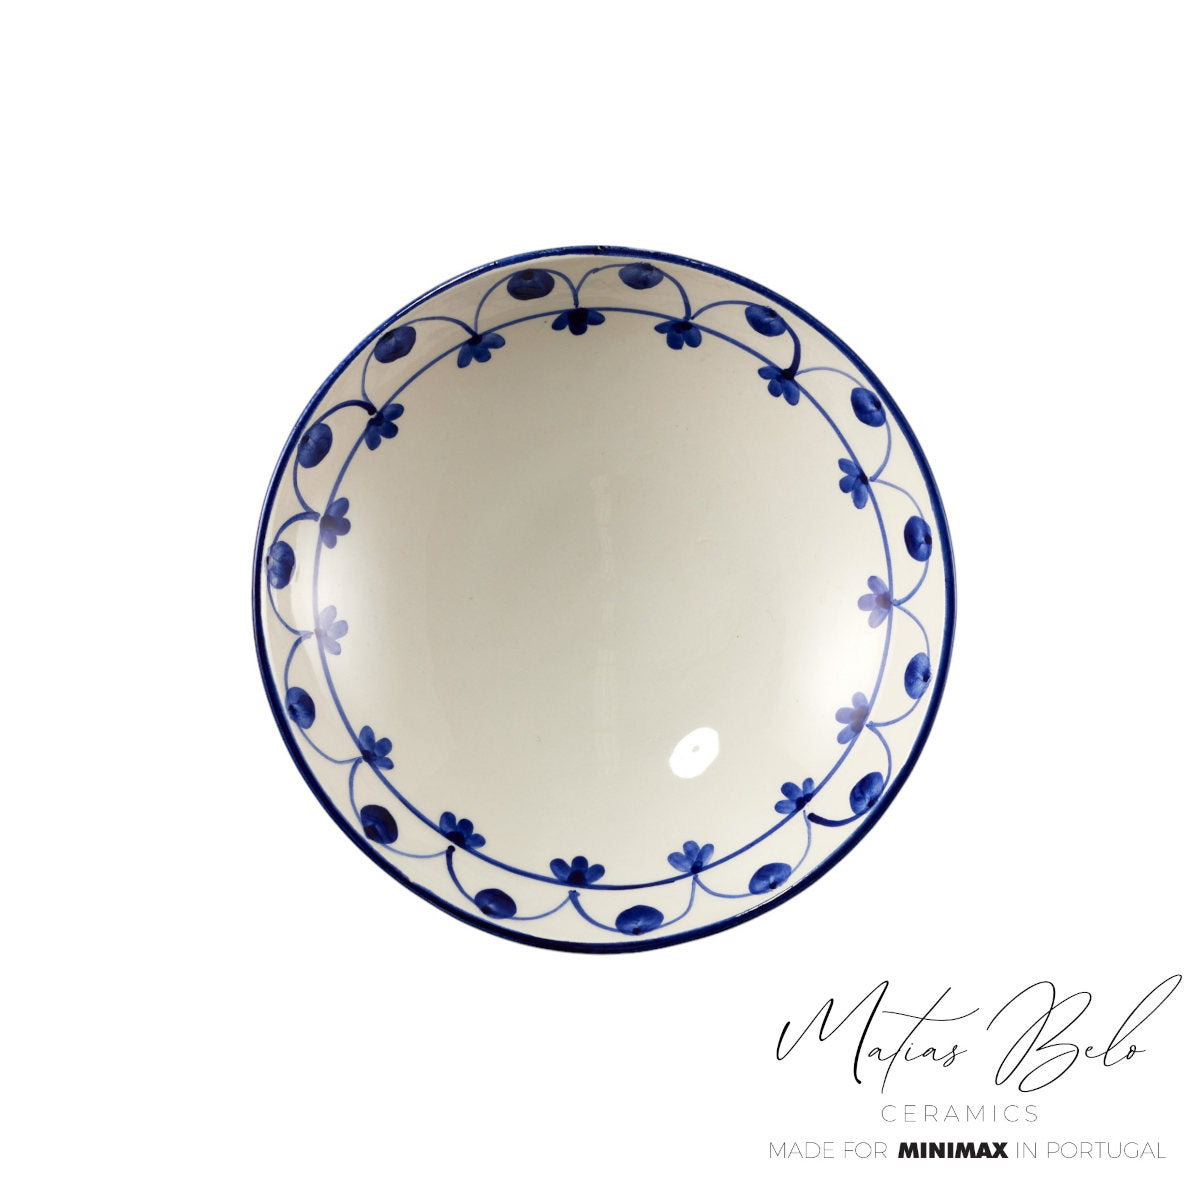 Matias Belo Ceramics Pasta Bowl Cobalt Blue 22.5cm | Minimax